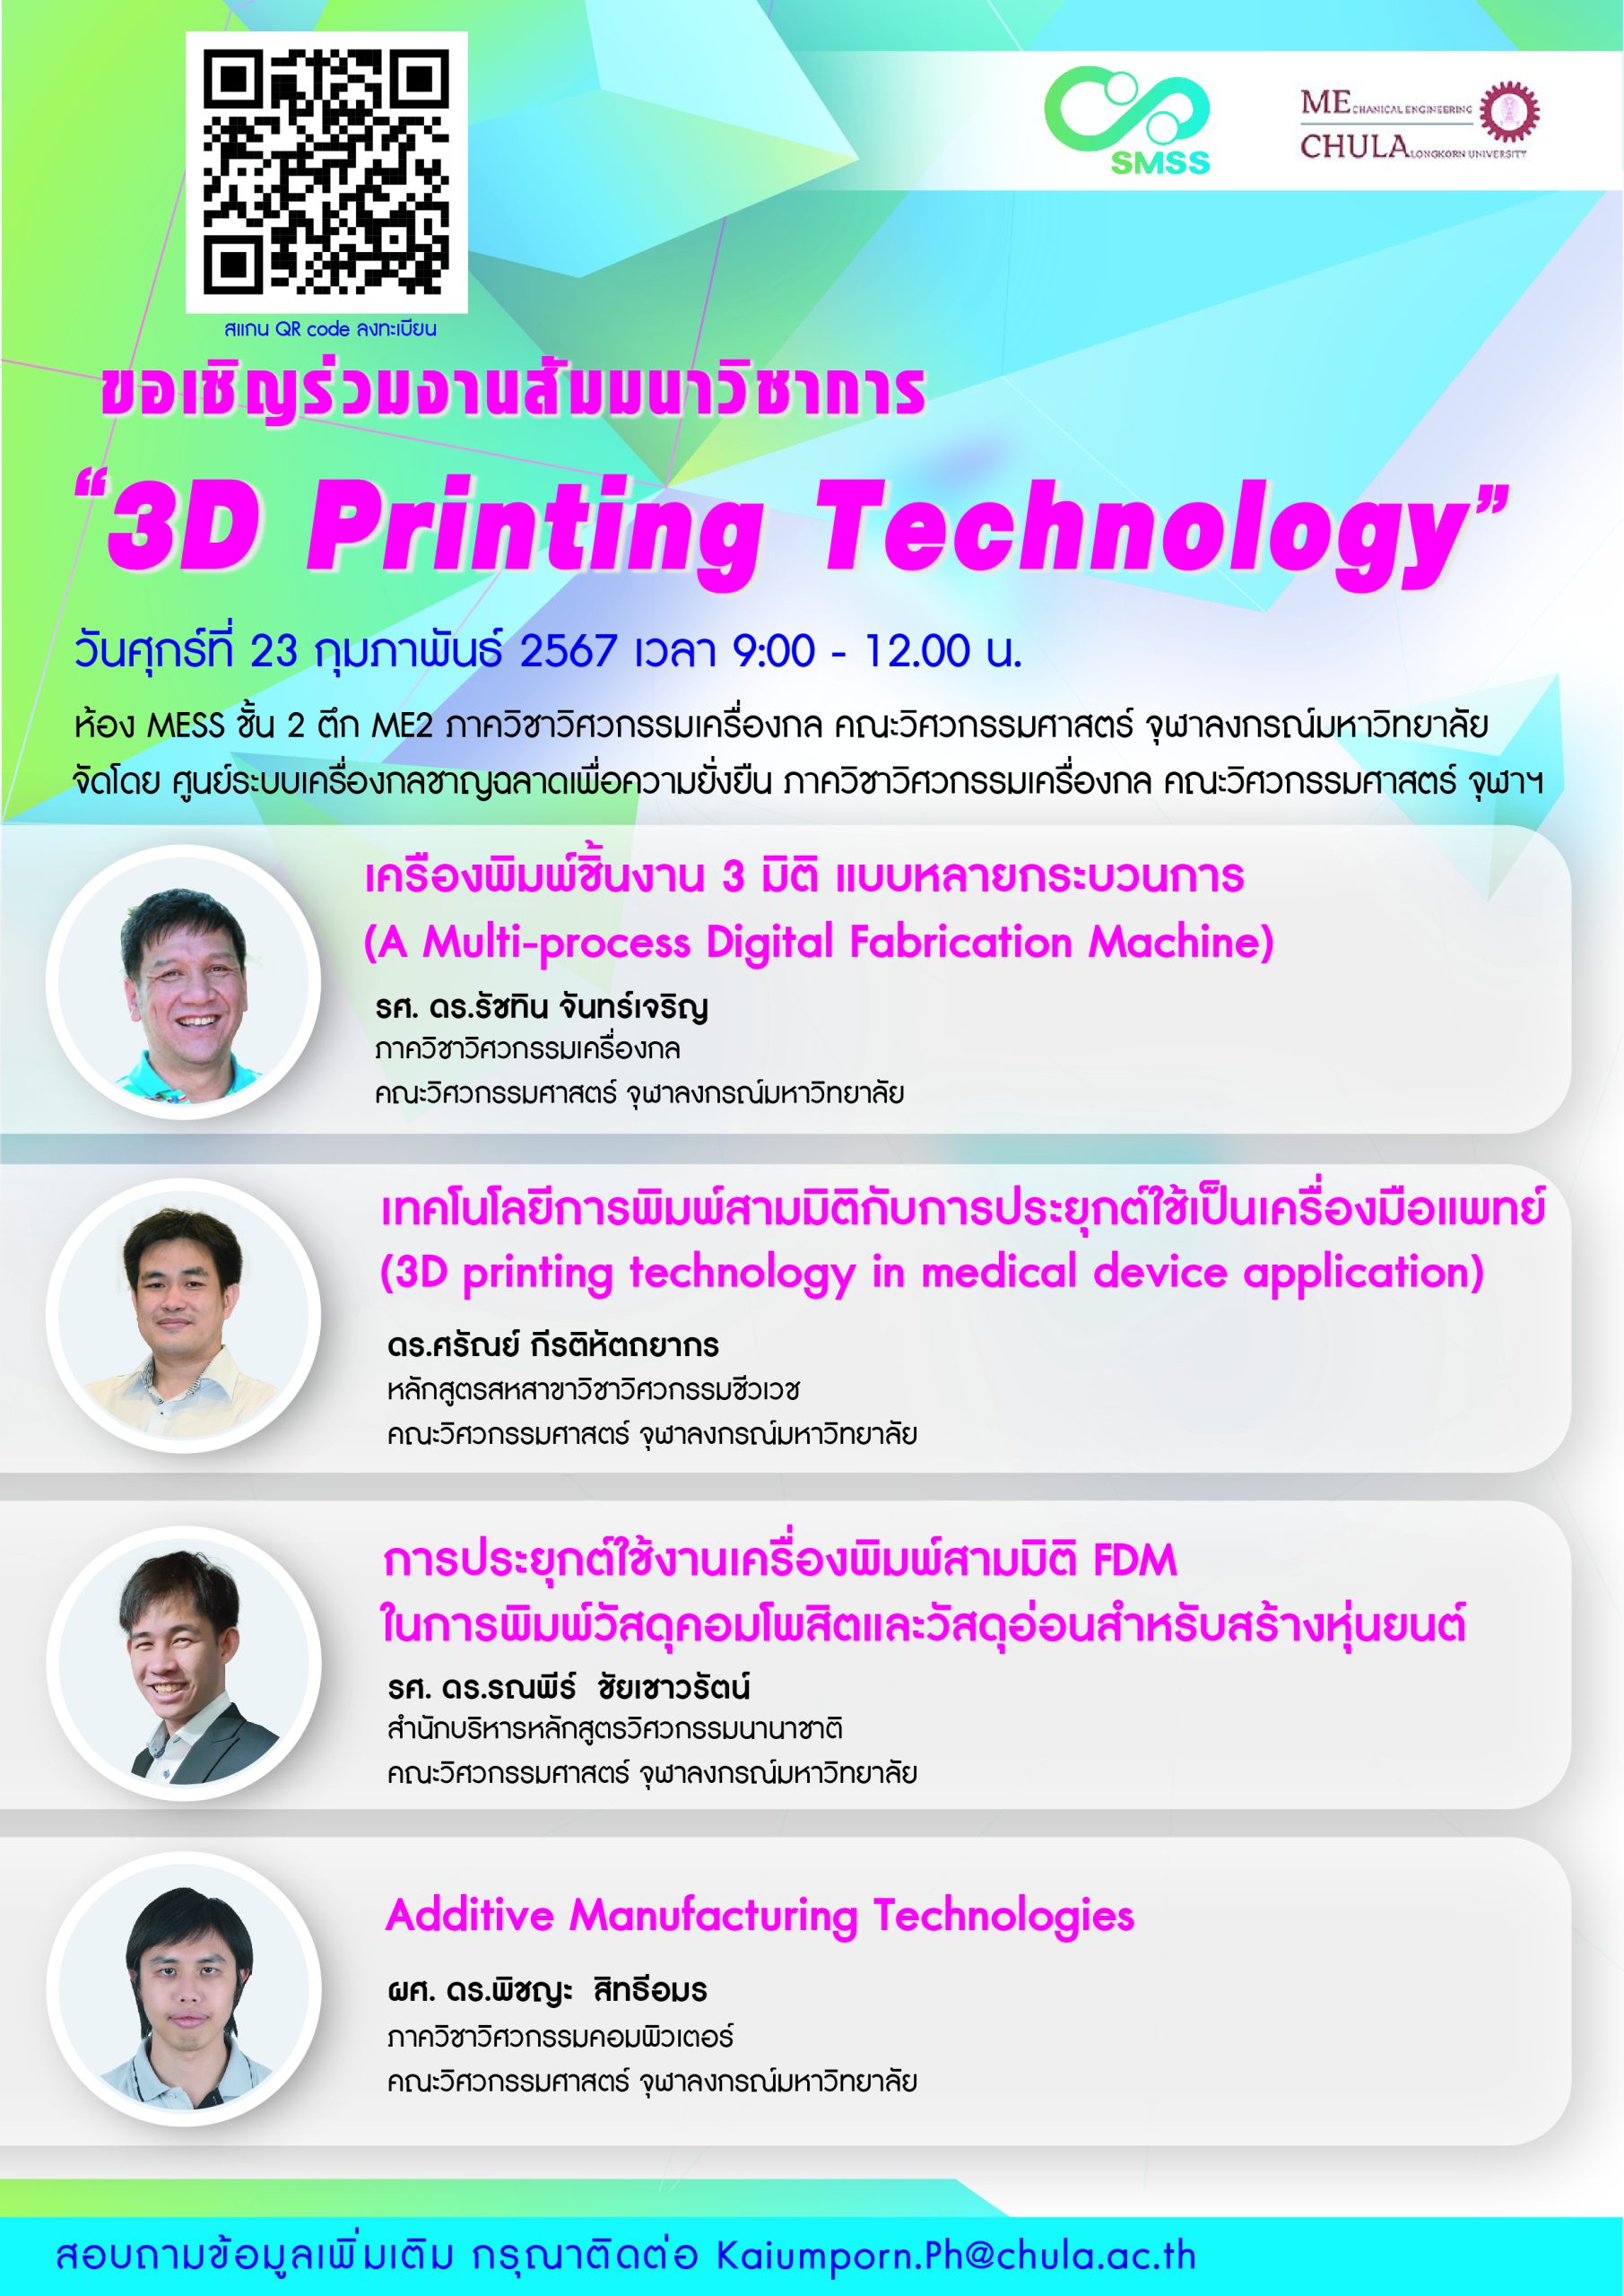 ประชาสัมพันธ์สัมมนาวิชาการหัวข้อ 3D Printing Technology